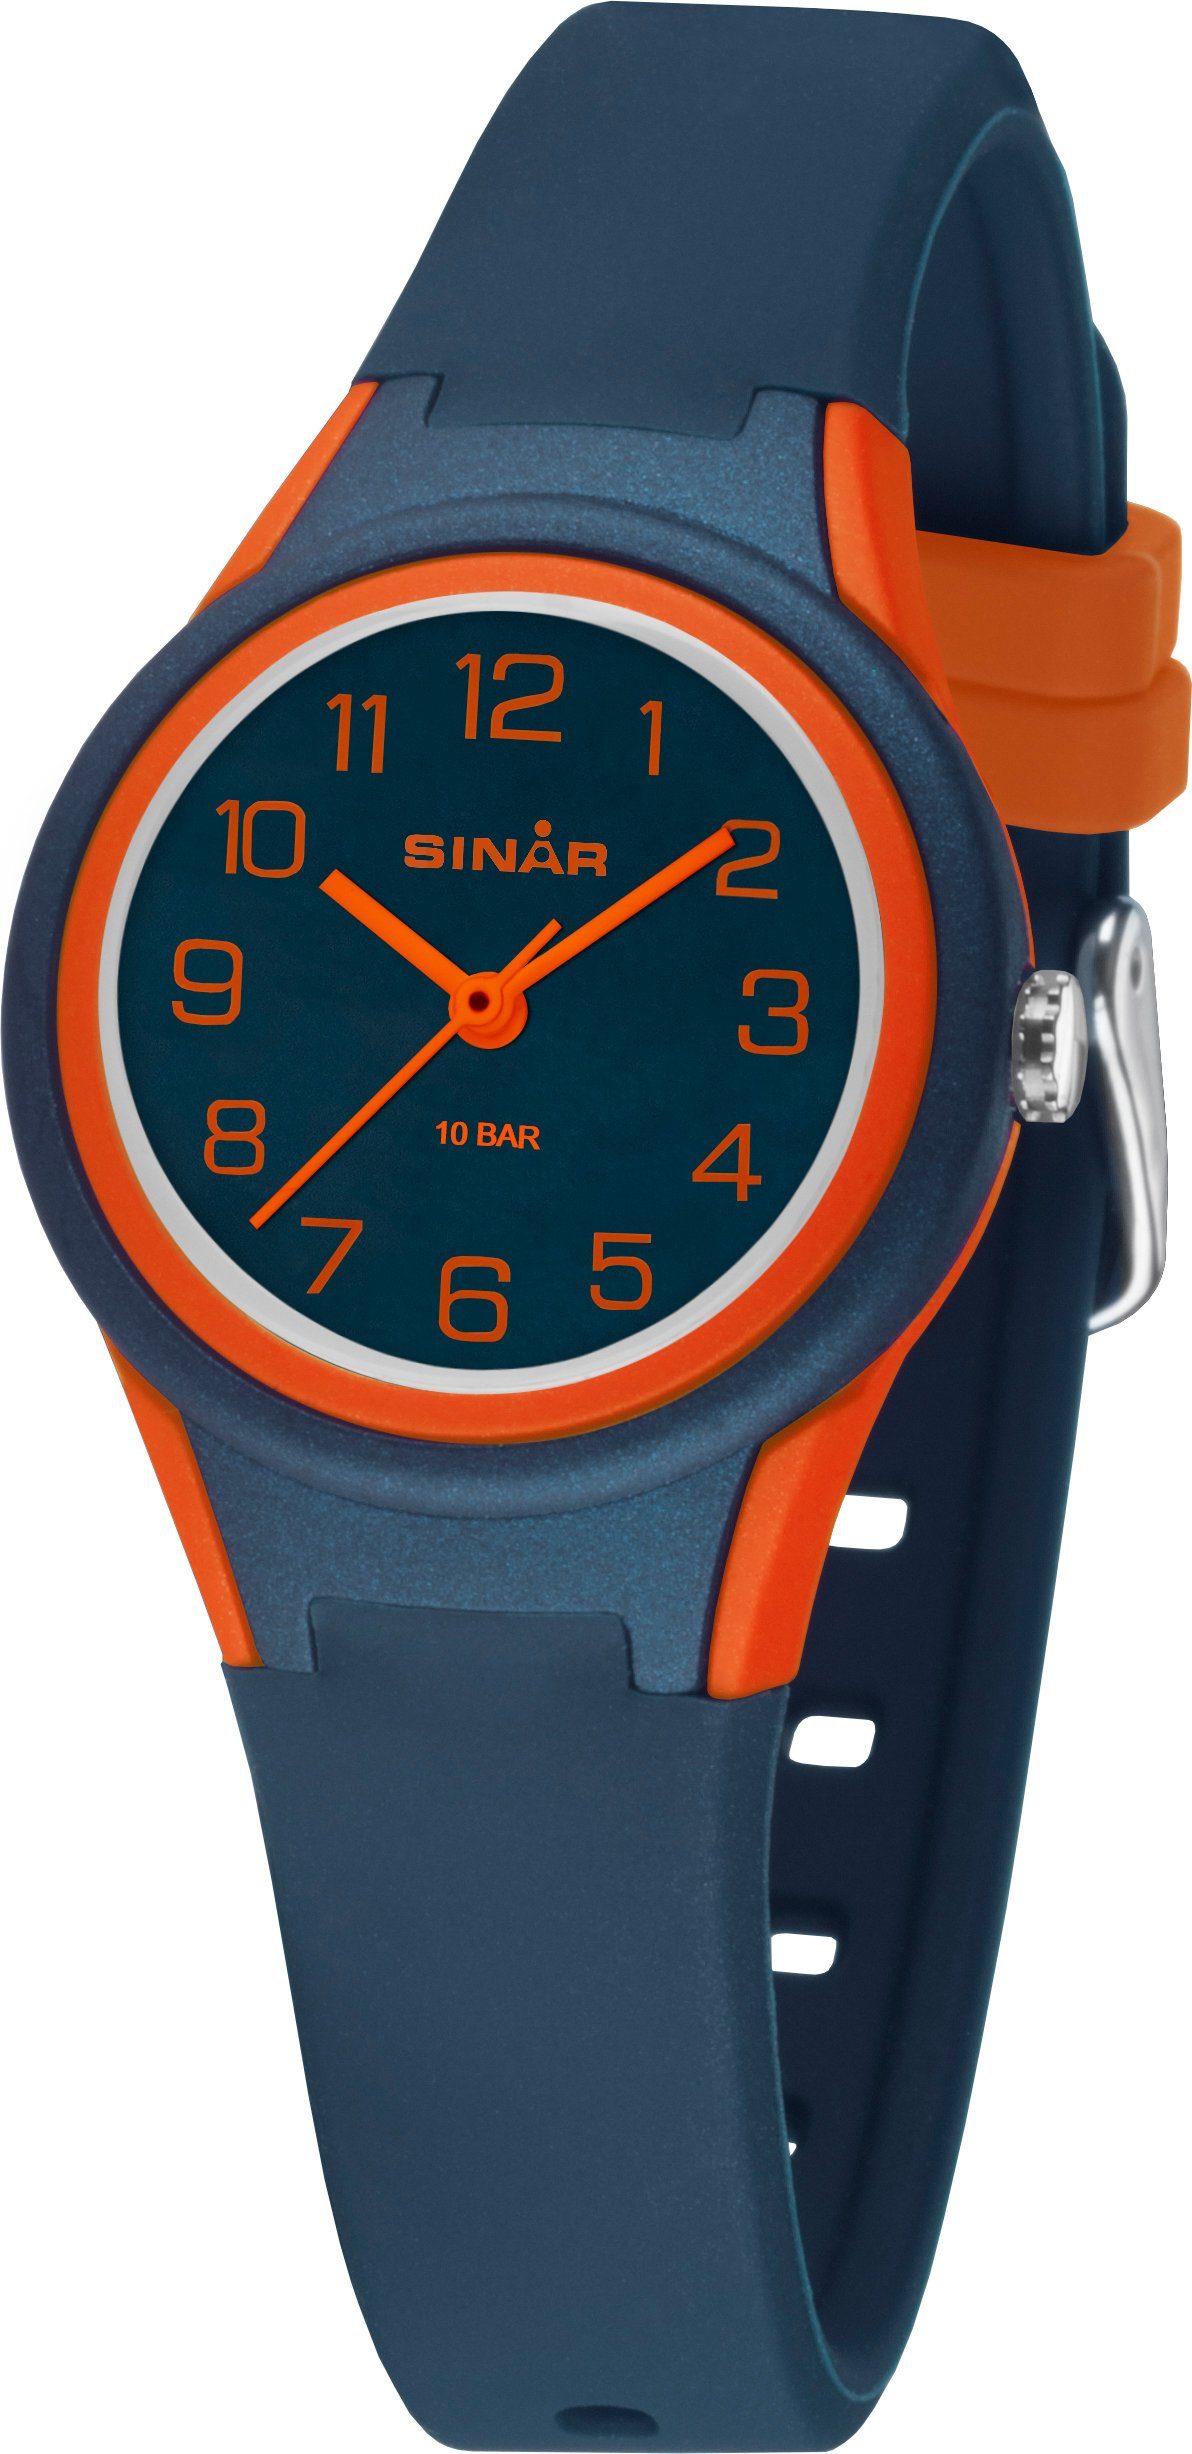 SINAR Quarzuhr XB-47-12, Armbanduhr, Kinderuhr, ideal auch als Geschenk